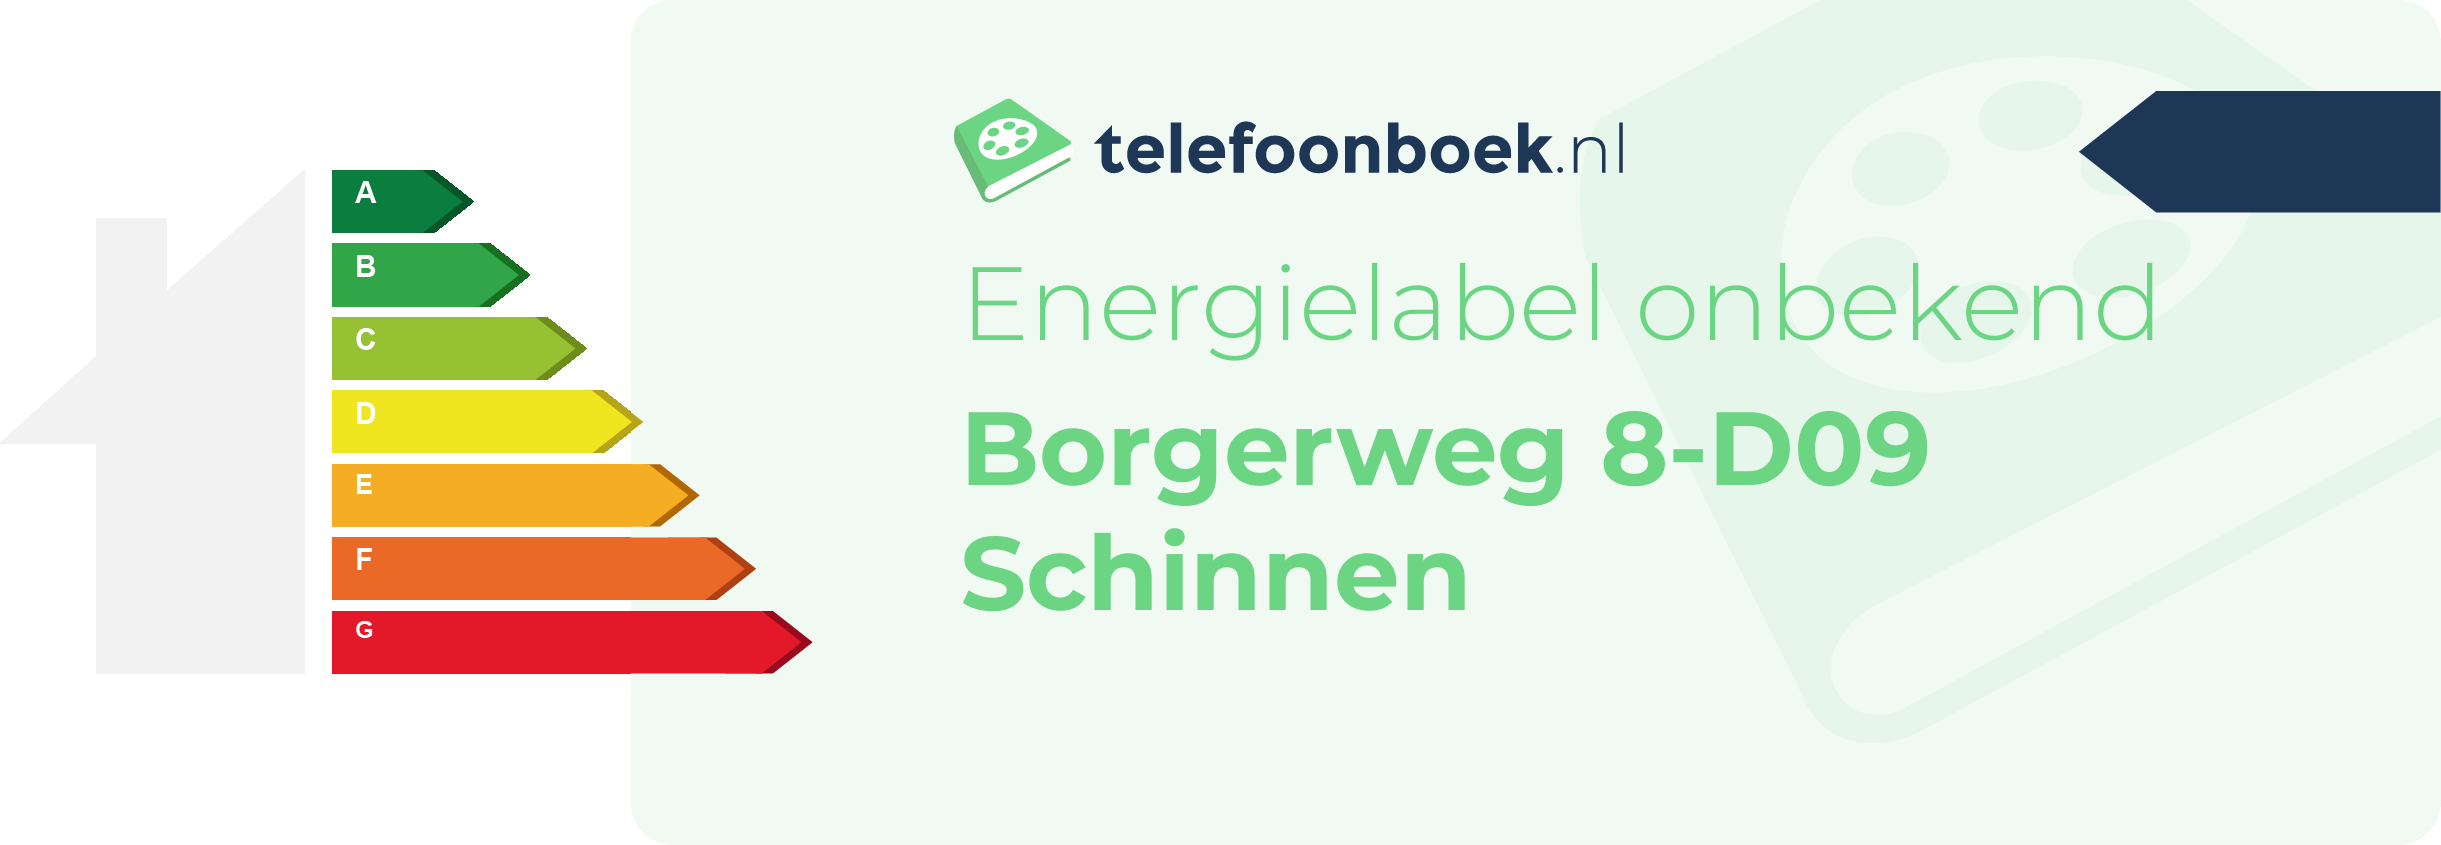 Energielabel Borgerweg 8-D09 Schinnen